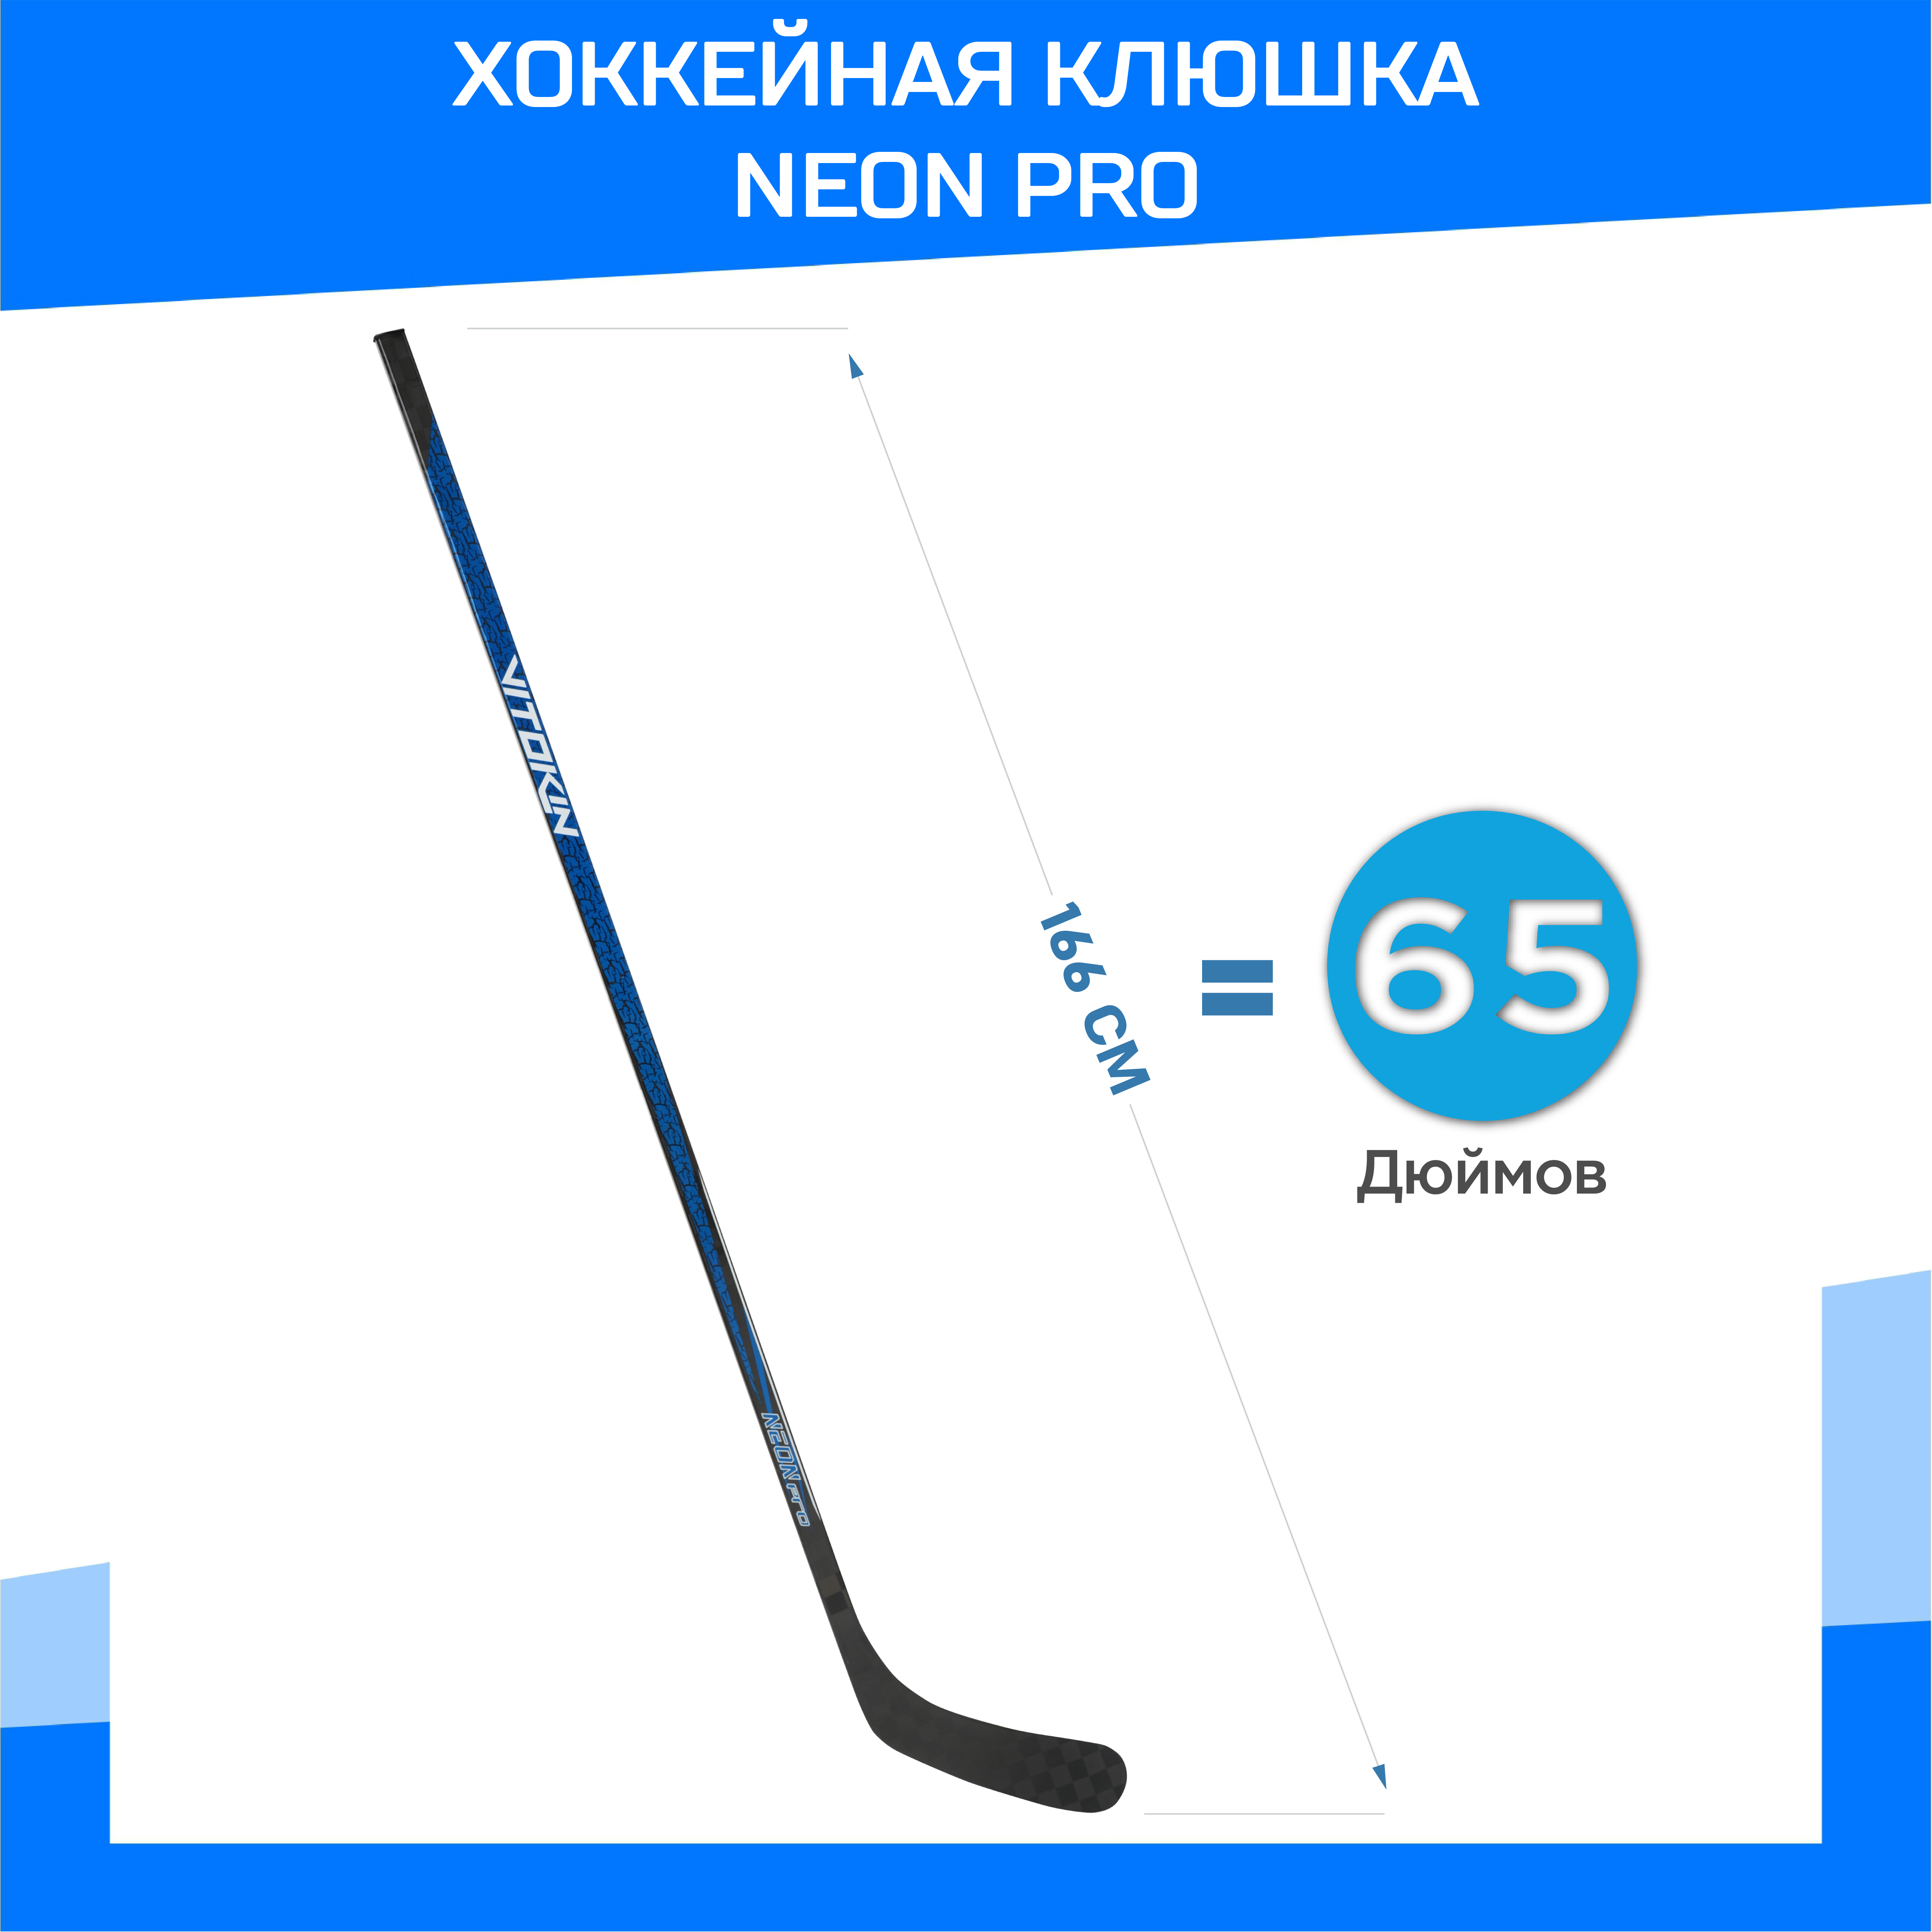 Хоккейная клюшка VITOKIN Neon Pro, 85 flex Правая, 28 загиб